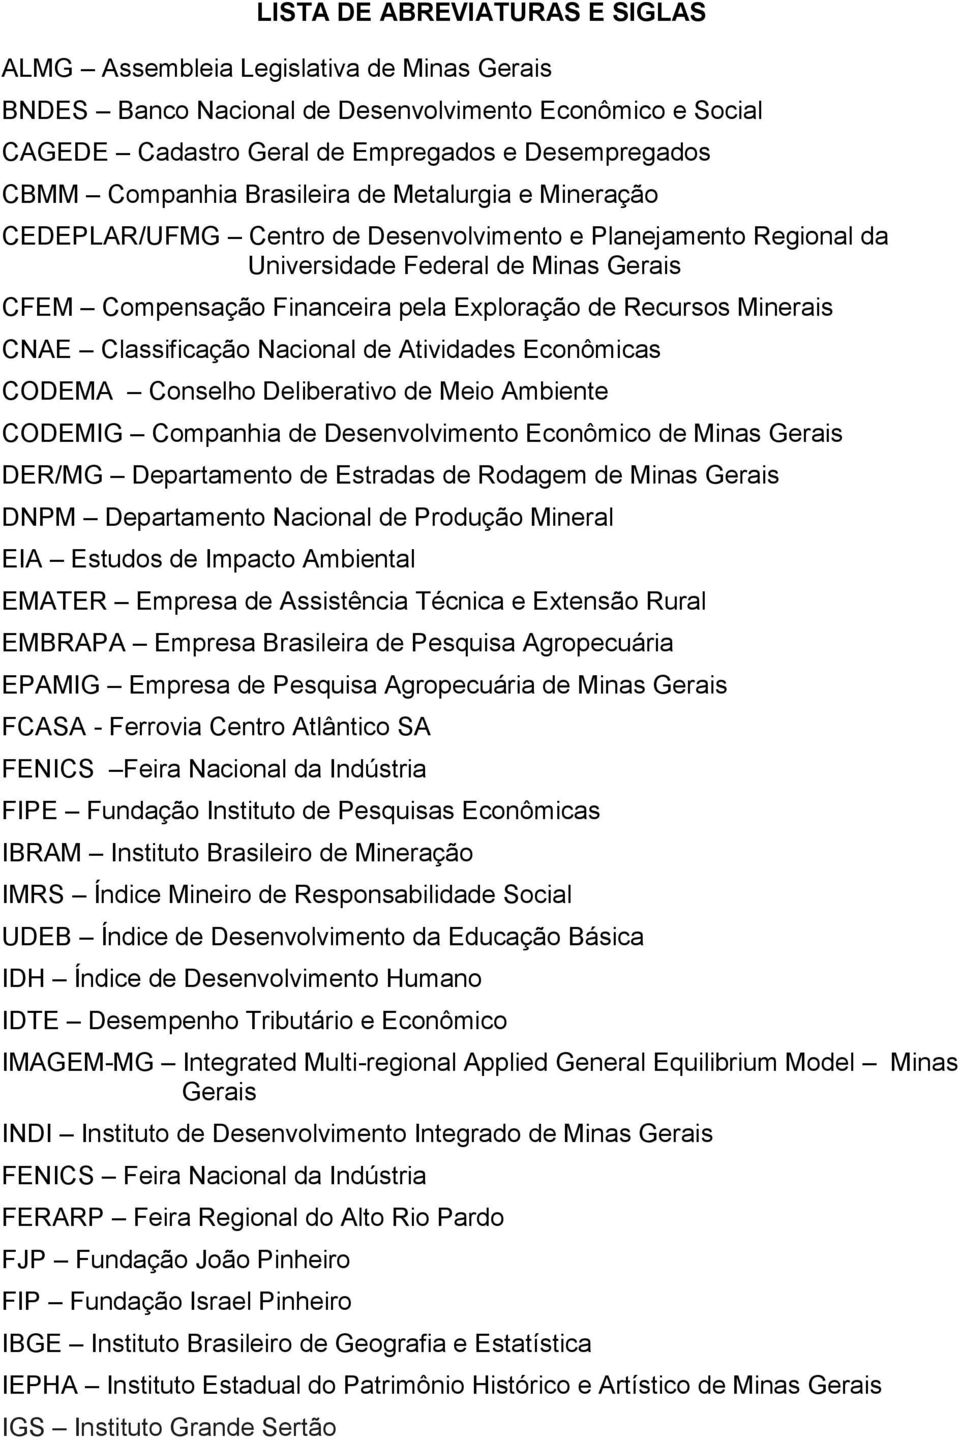 Recursos Minerais CNAE Classificação Nacional de Atividades Econômicas CODEMA Conselho Deliberativo de Meio Ambiente CODEMIG Companhia de Desenvolvimento Econômico de Minas Gerais DER/MG Departamento